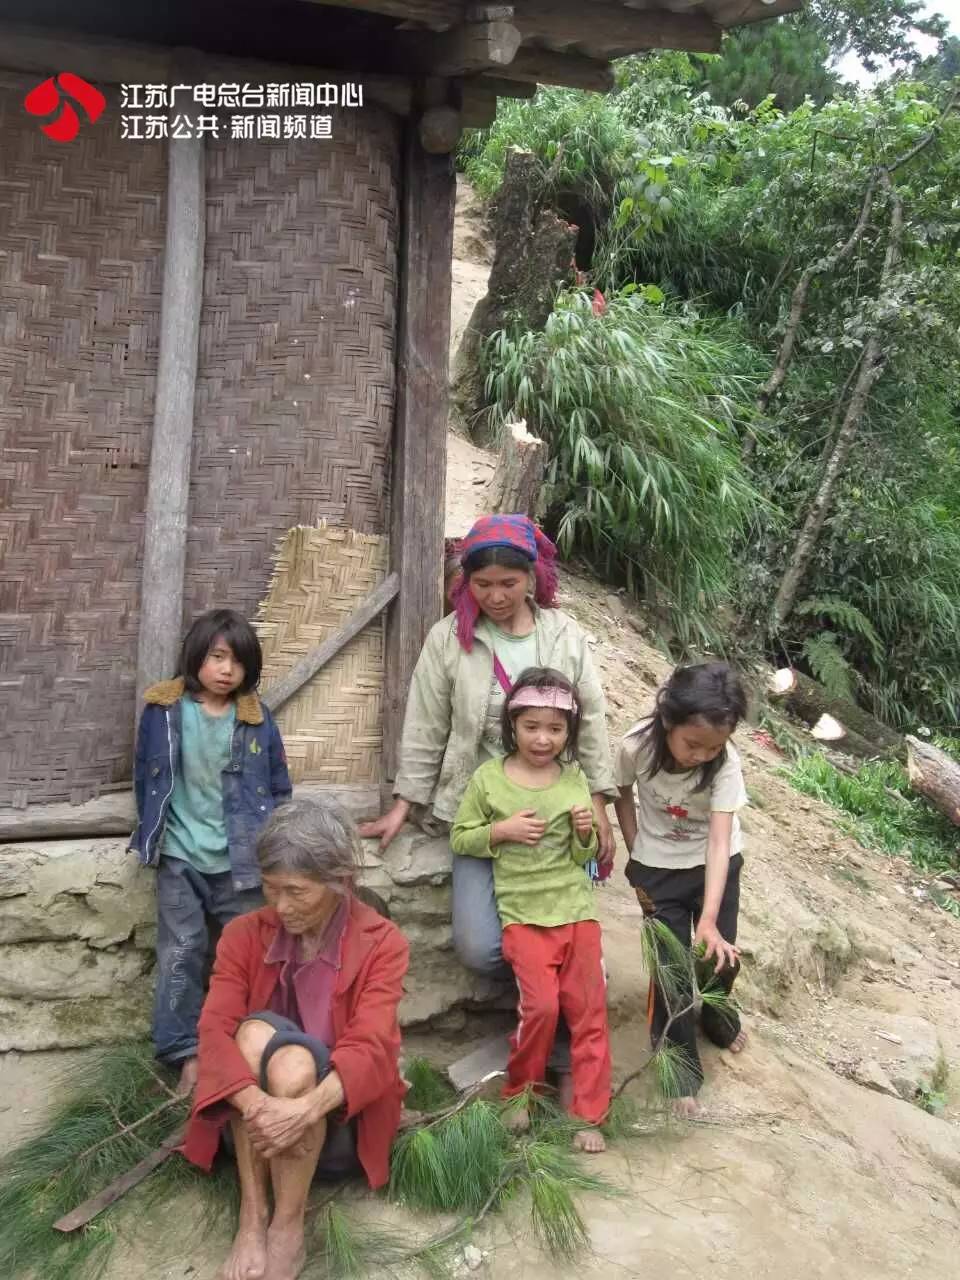 江苏leyu70vip卫视新闻眼电话 一元捐献❤是你们温暖了福贡村民的整个寒冬